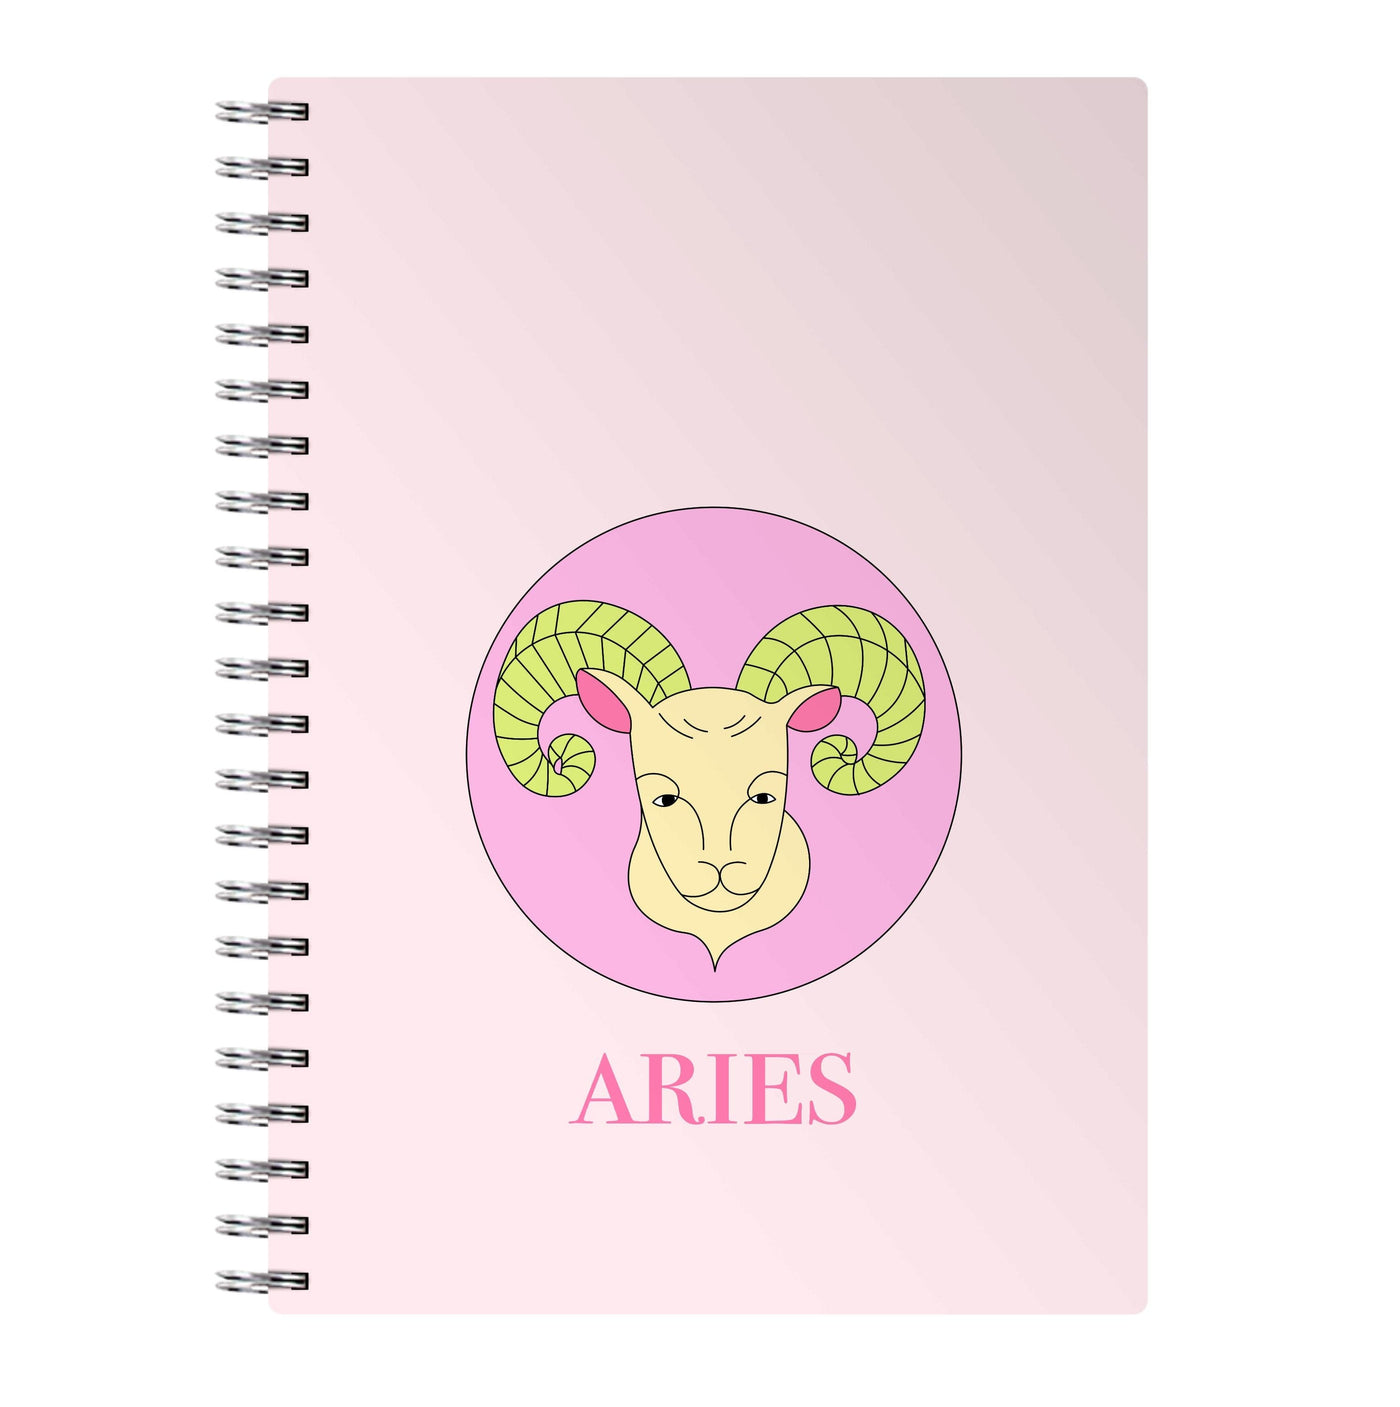 Aries - Tarot Cards Notebook